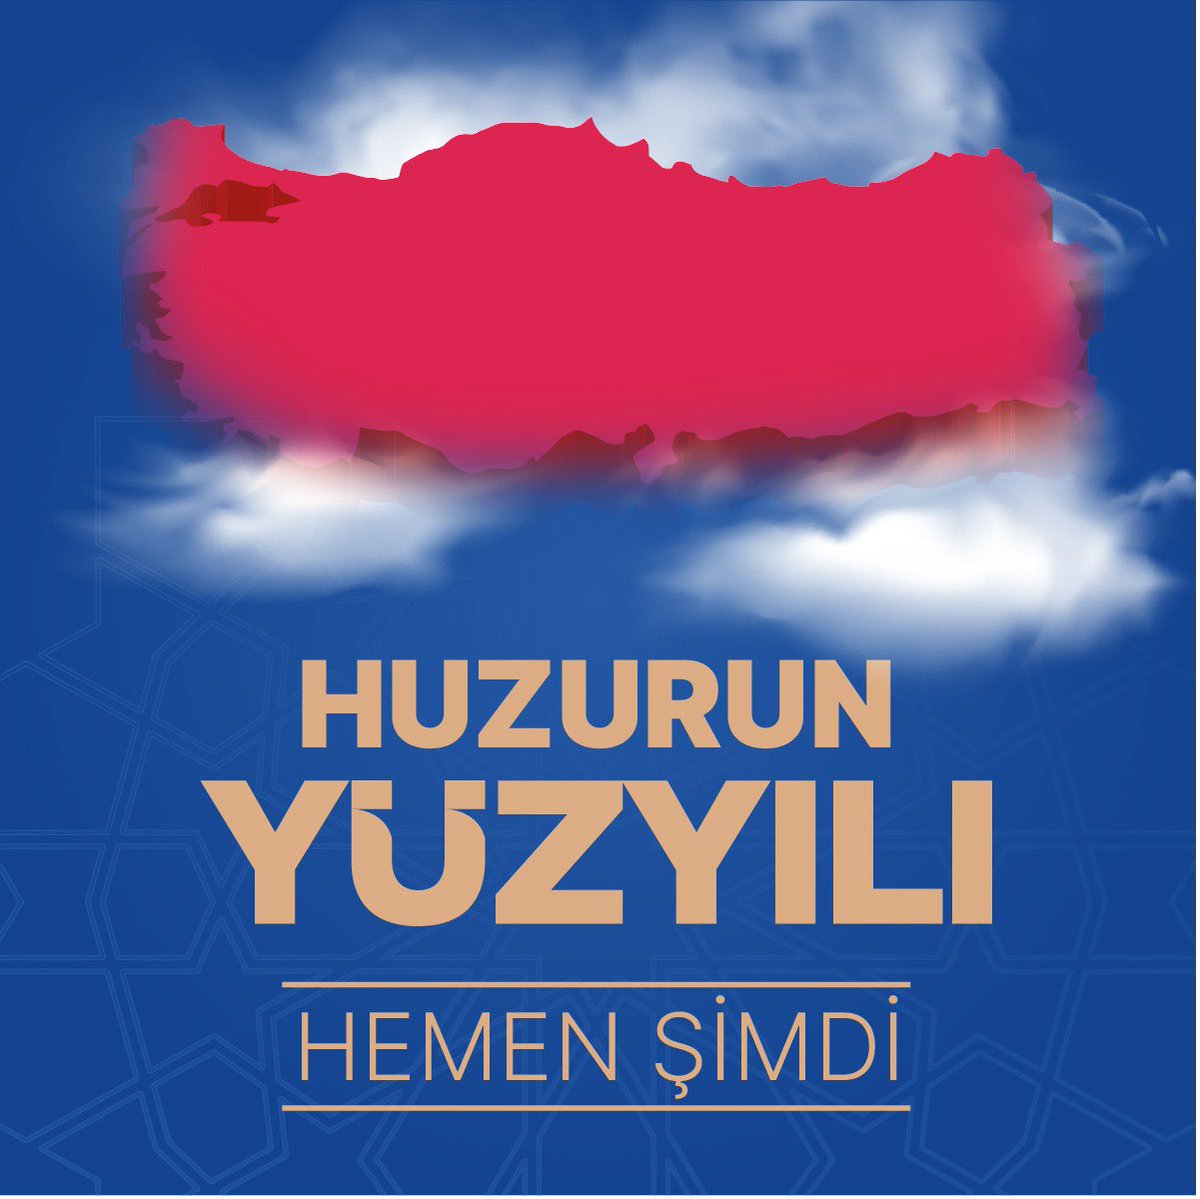 Huzurun yüzyılı hemen şimdi… Türkiye Yüzyılı…